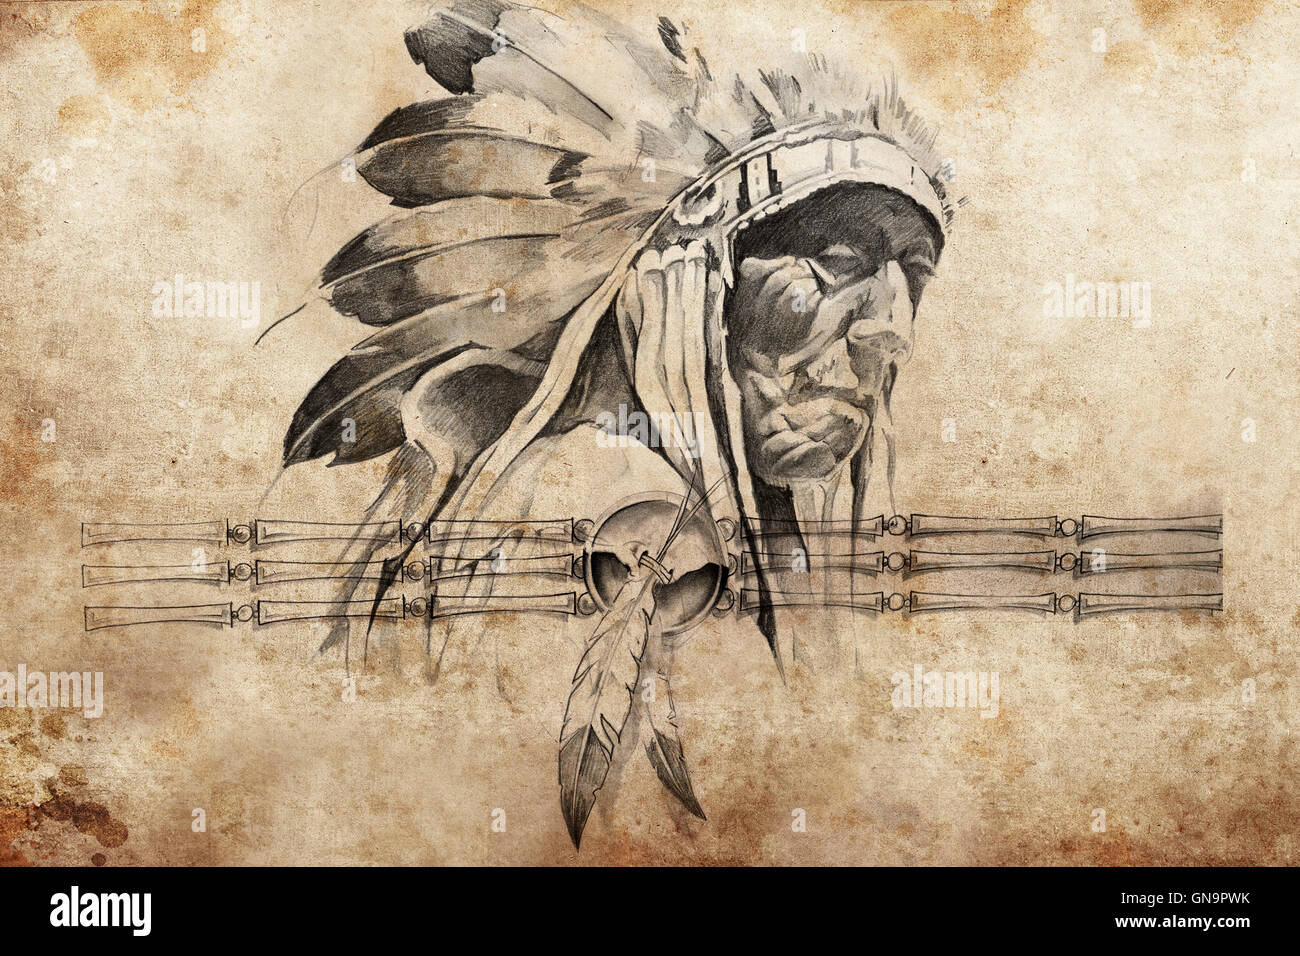 Croquis de tatouage tribal indien américain chef warriors Banque D'Images